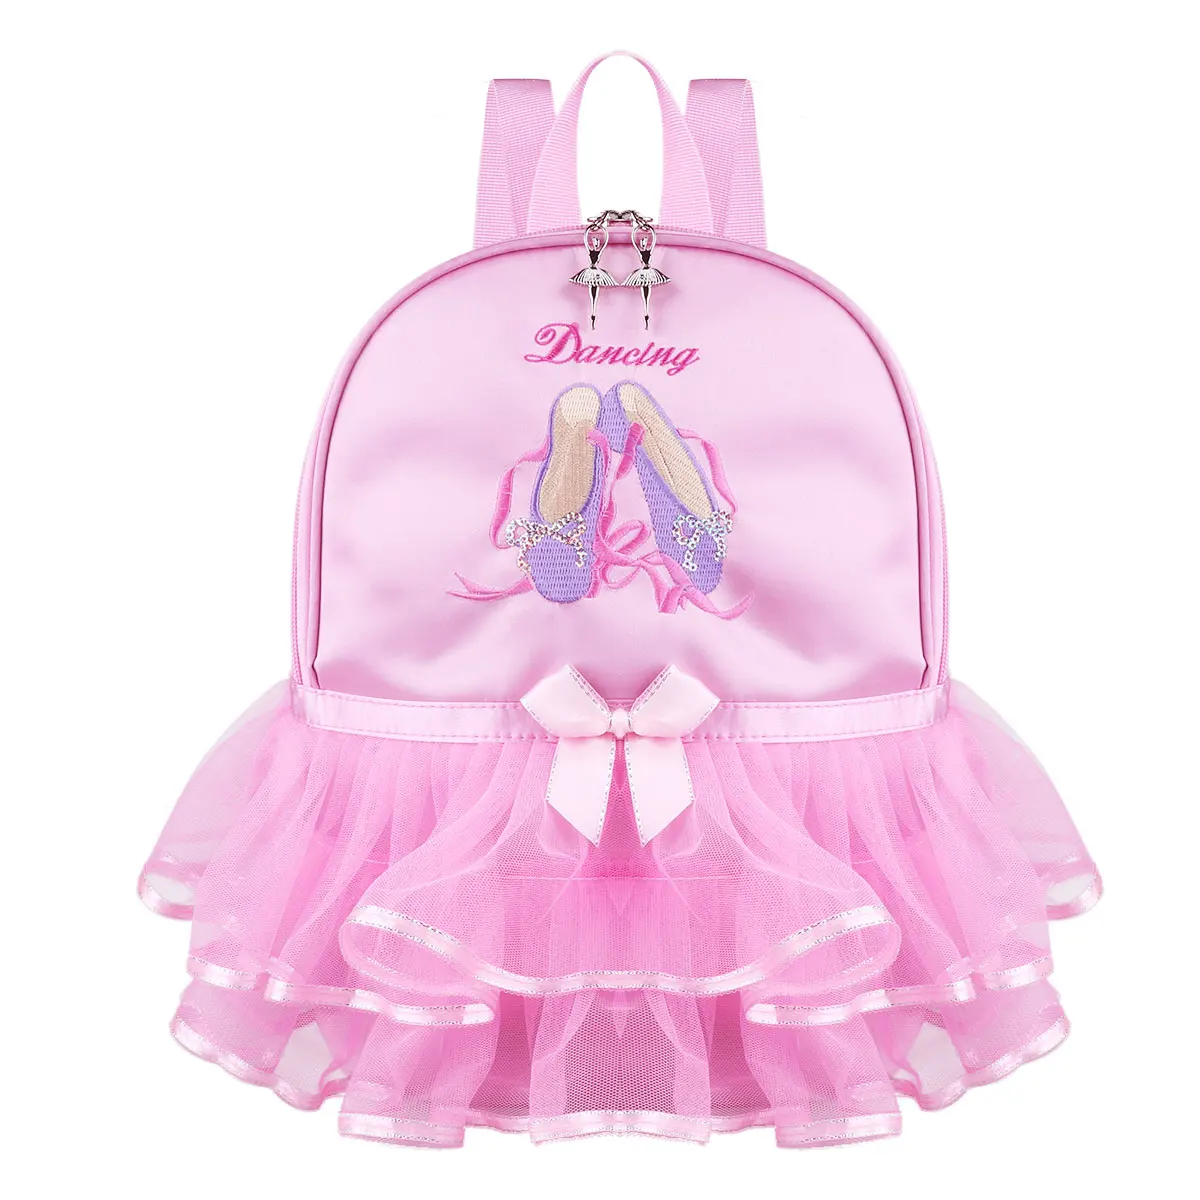 Для девочек Сумочка балерины сумки для детского сада, школы платье для девочек-подростков путешествия рюкзаки для детей ясельного возраста пачка с оборками для принцессы сумка для балета - Цвет: Pink